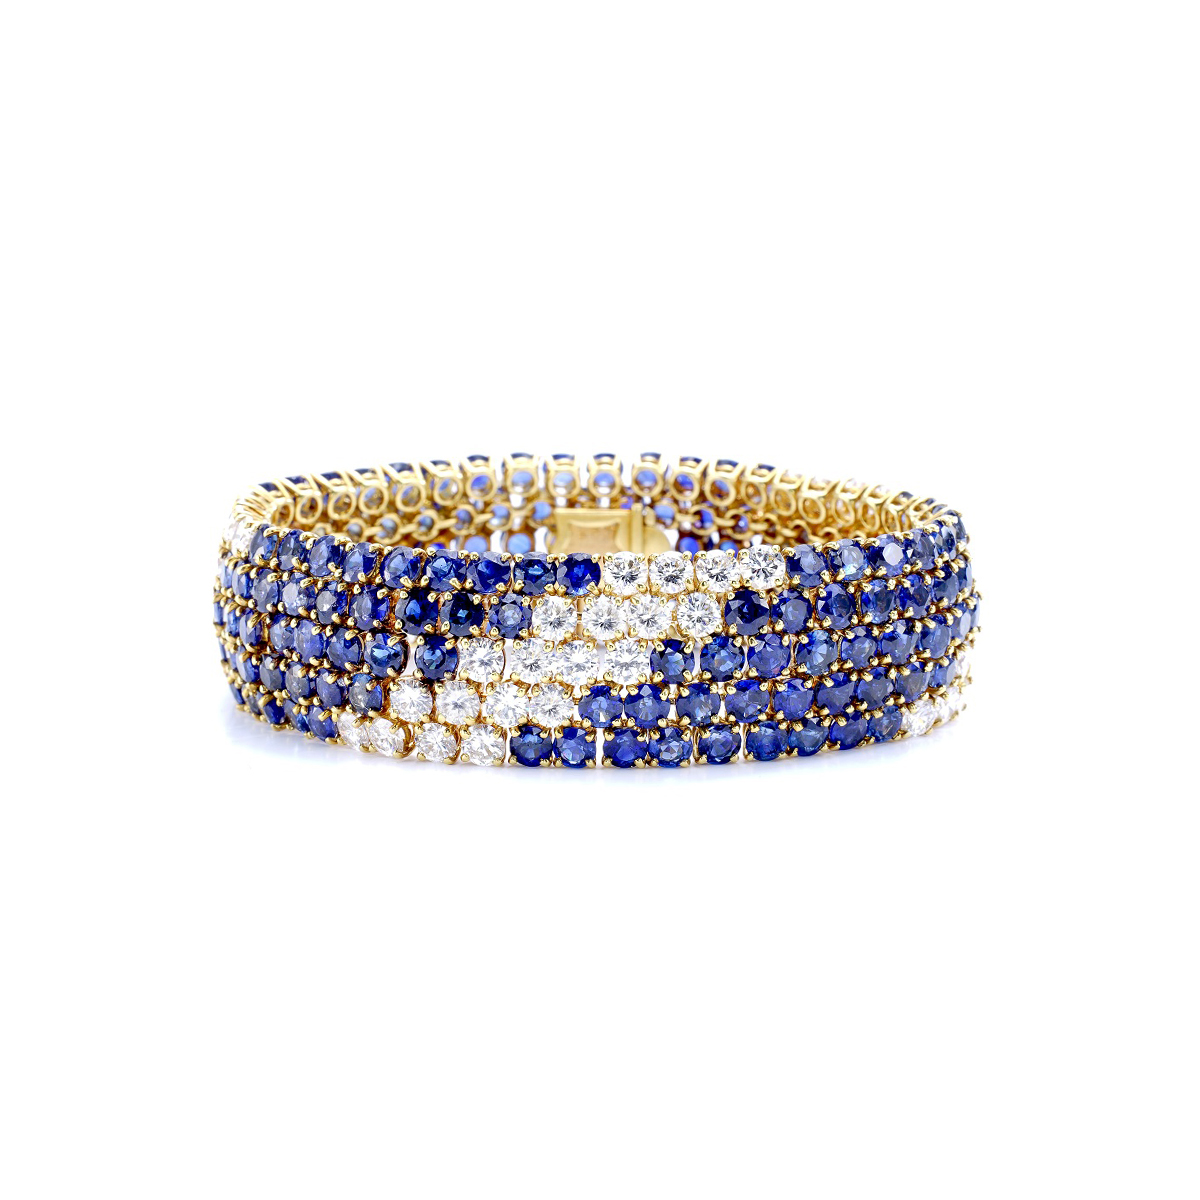 Gerard-VanCleef-sapphire-gem-diamond-bracelet